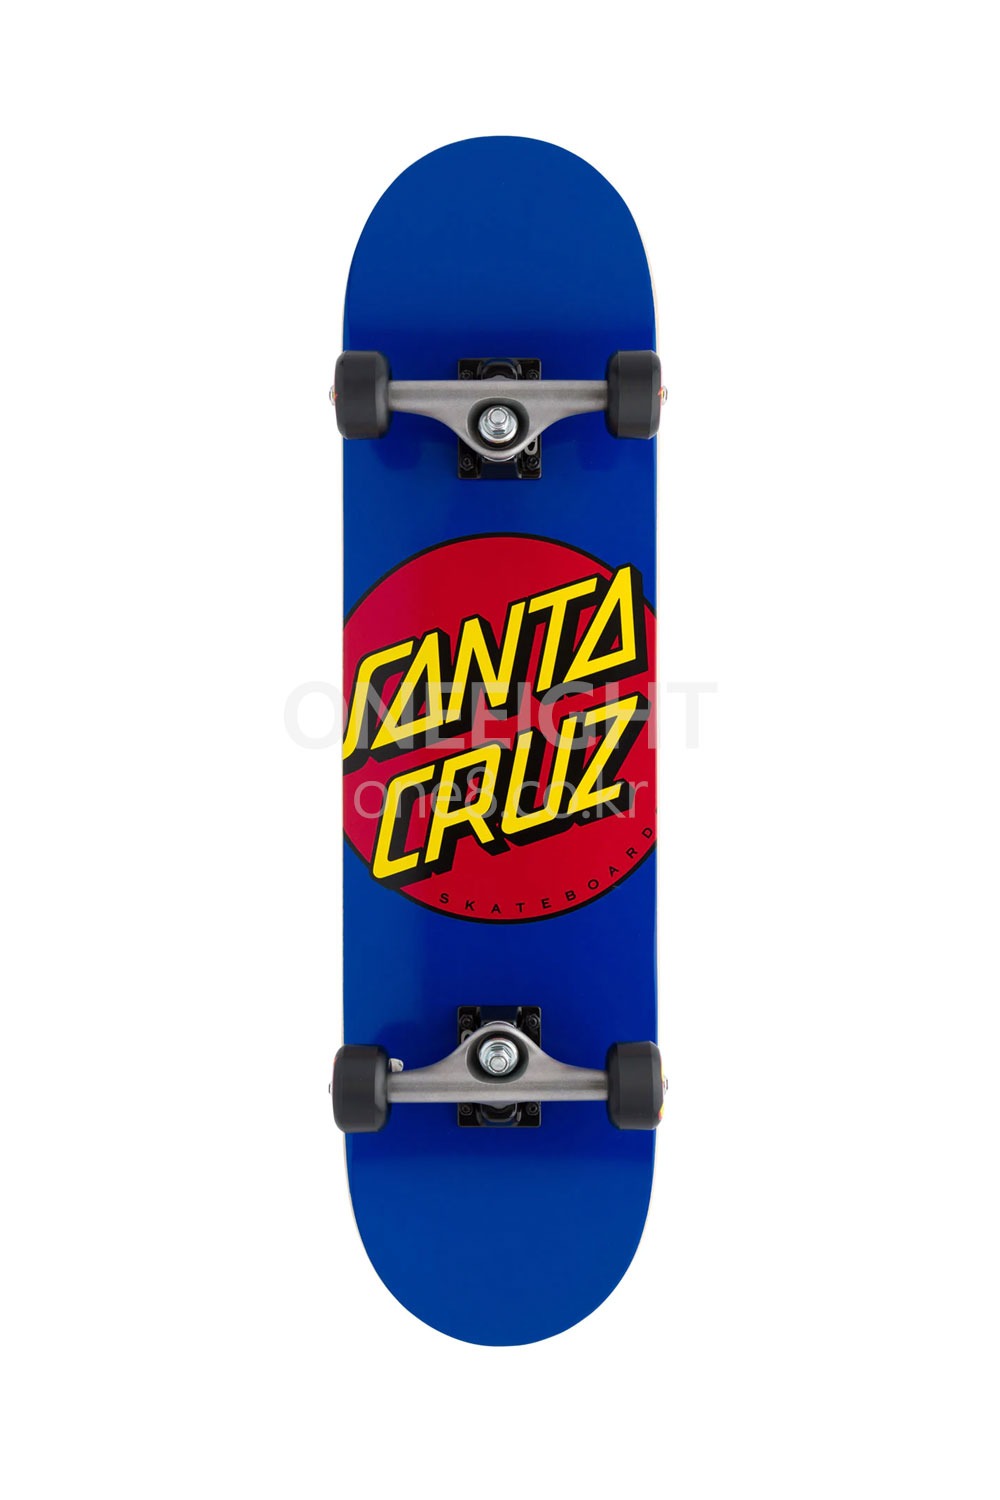 산타크루즈 스케이트보드 컴플릿 SANTA CRUZ_CLASSIC DOT FULL 8.00 IN X 31.25 IN_Z1S640300